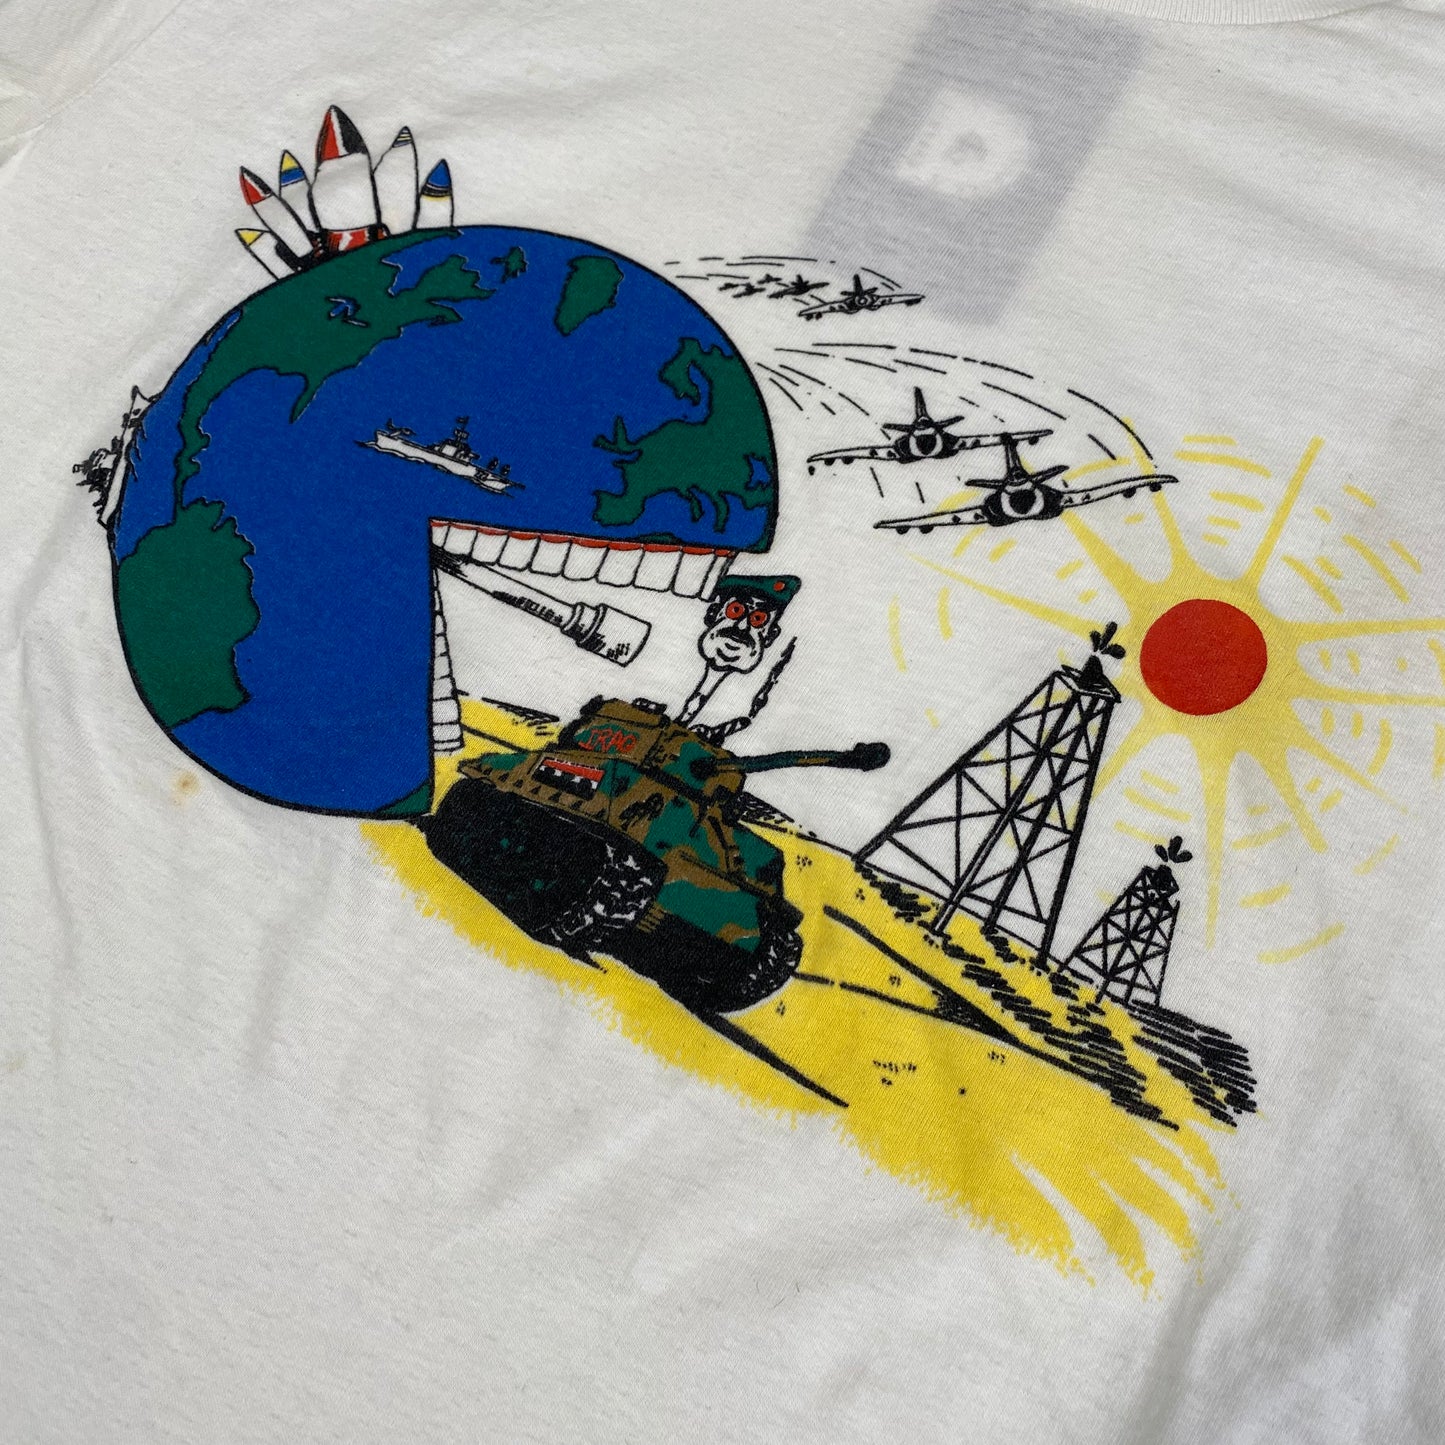 90’s Gulf War T-shirt Sz L